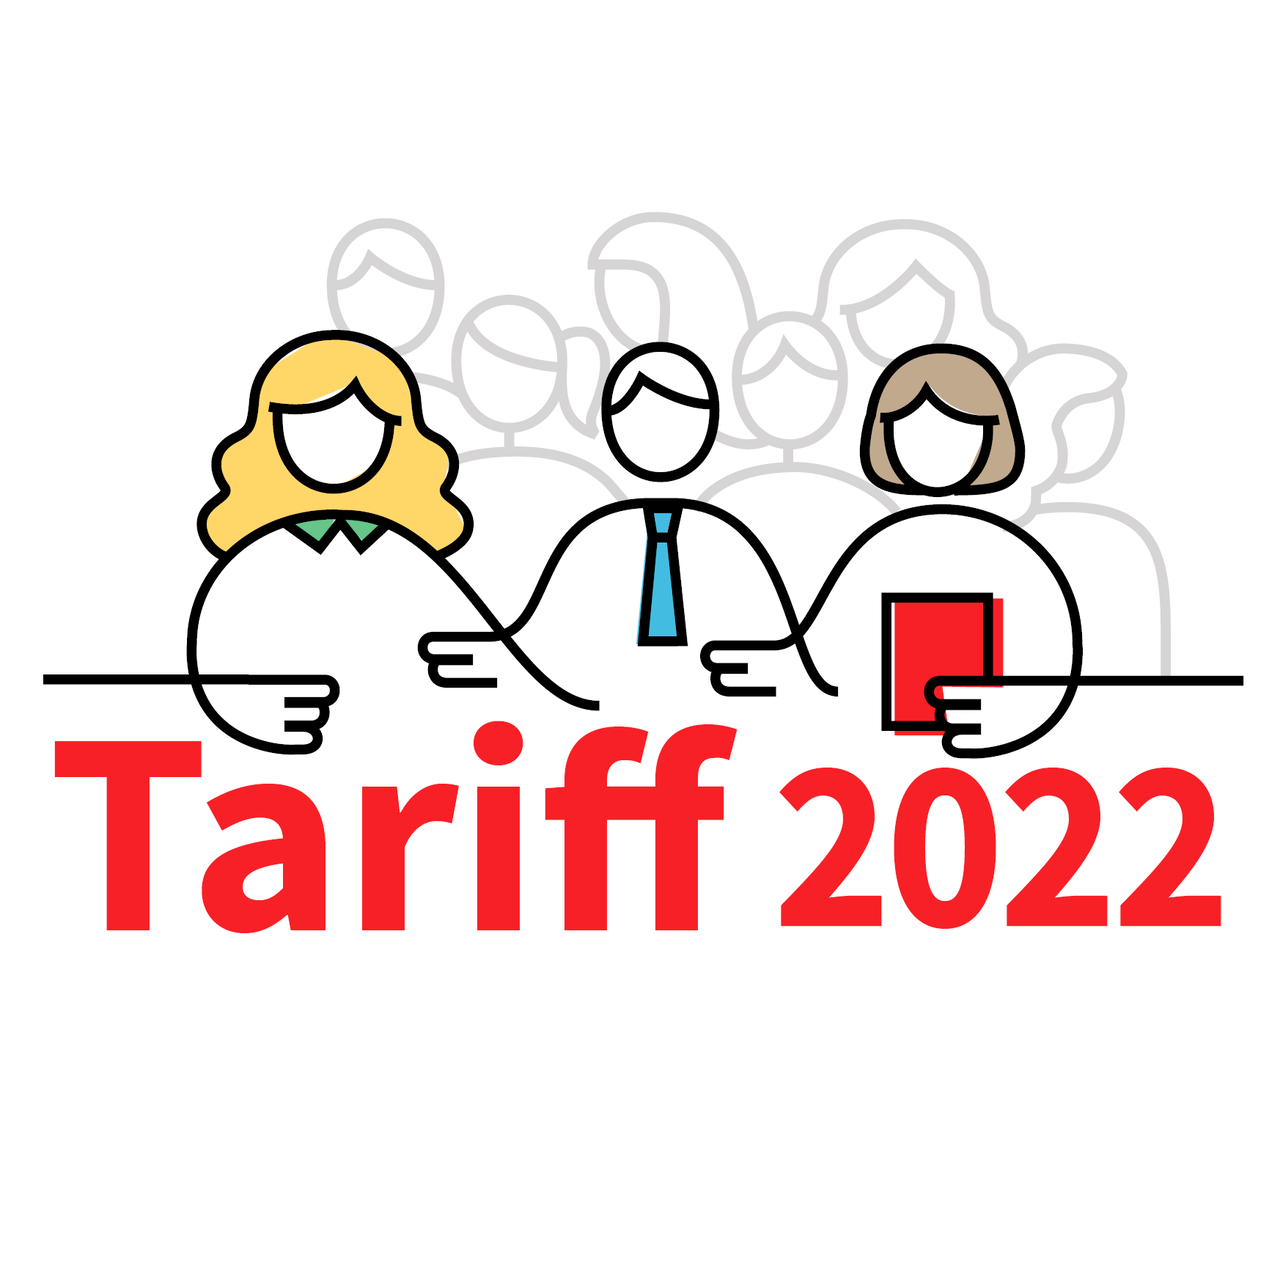 Tariff 2022